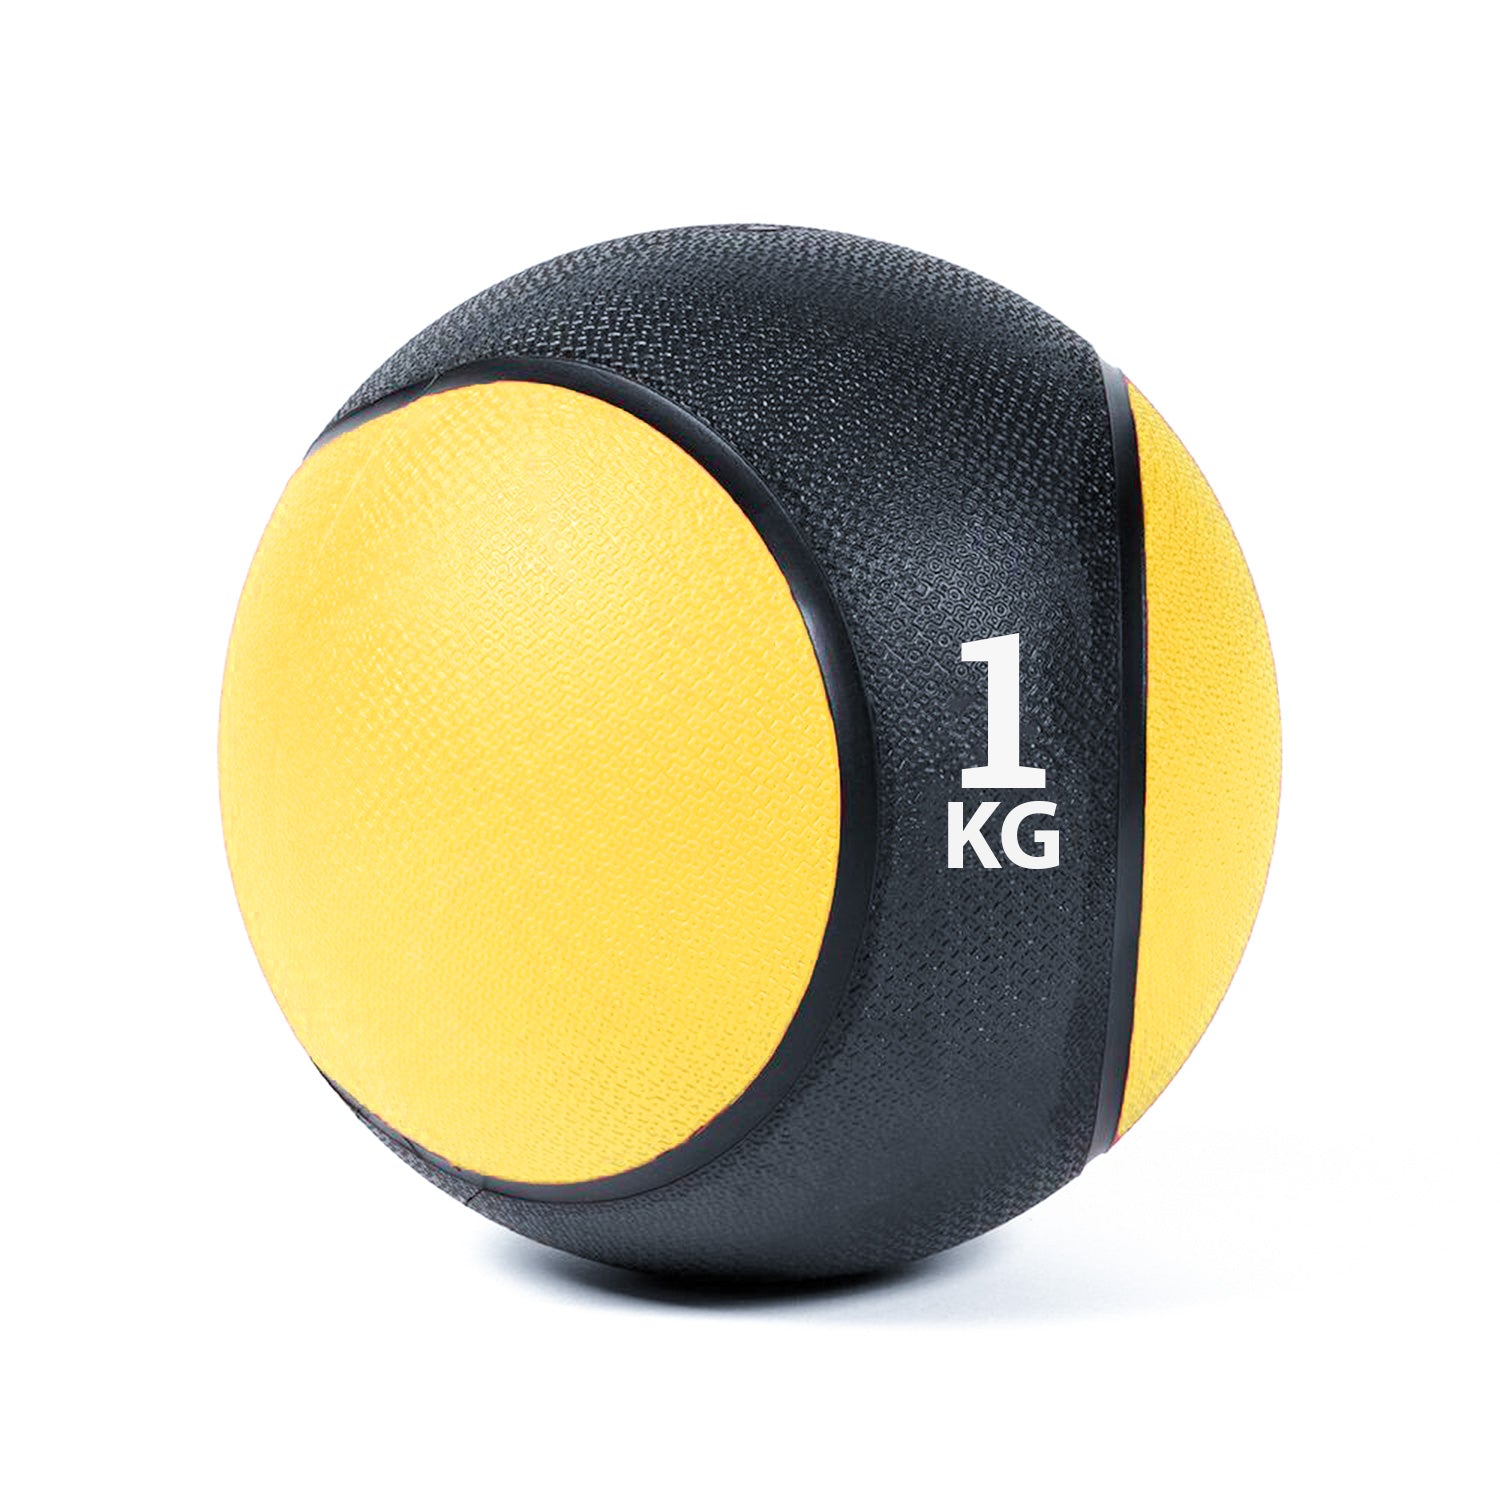 كرة طبية من المطاط لاعادة التأهيل و اللياقة البدنية - لون اسود و اصفر - وزن 1 كيلو جرام - Kanteen - كانتين